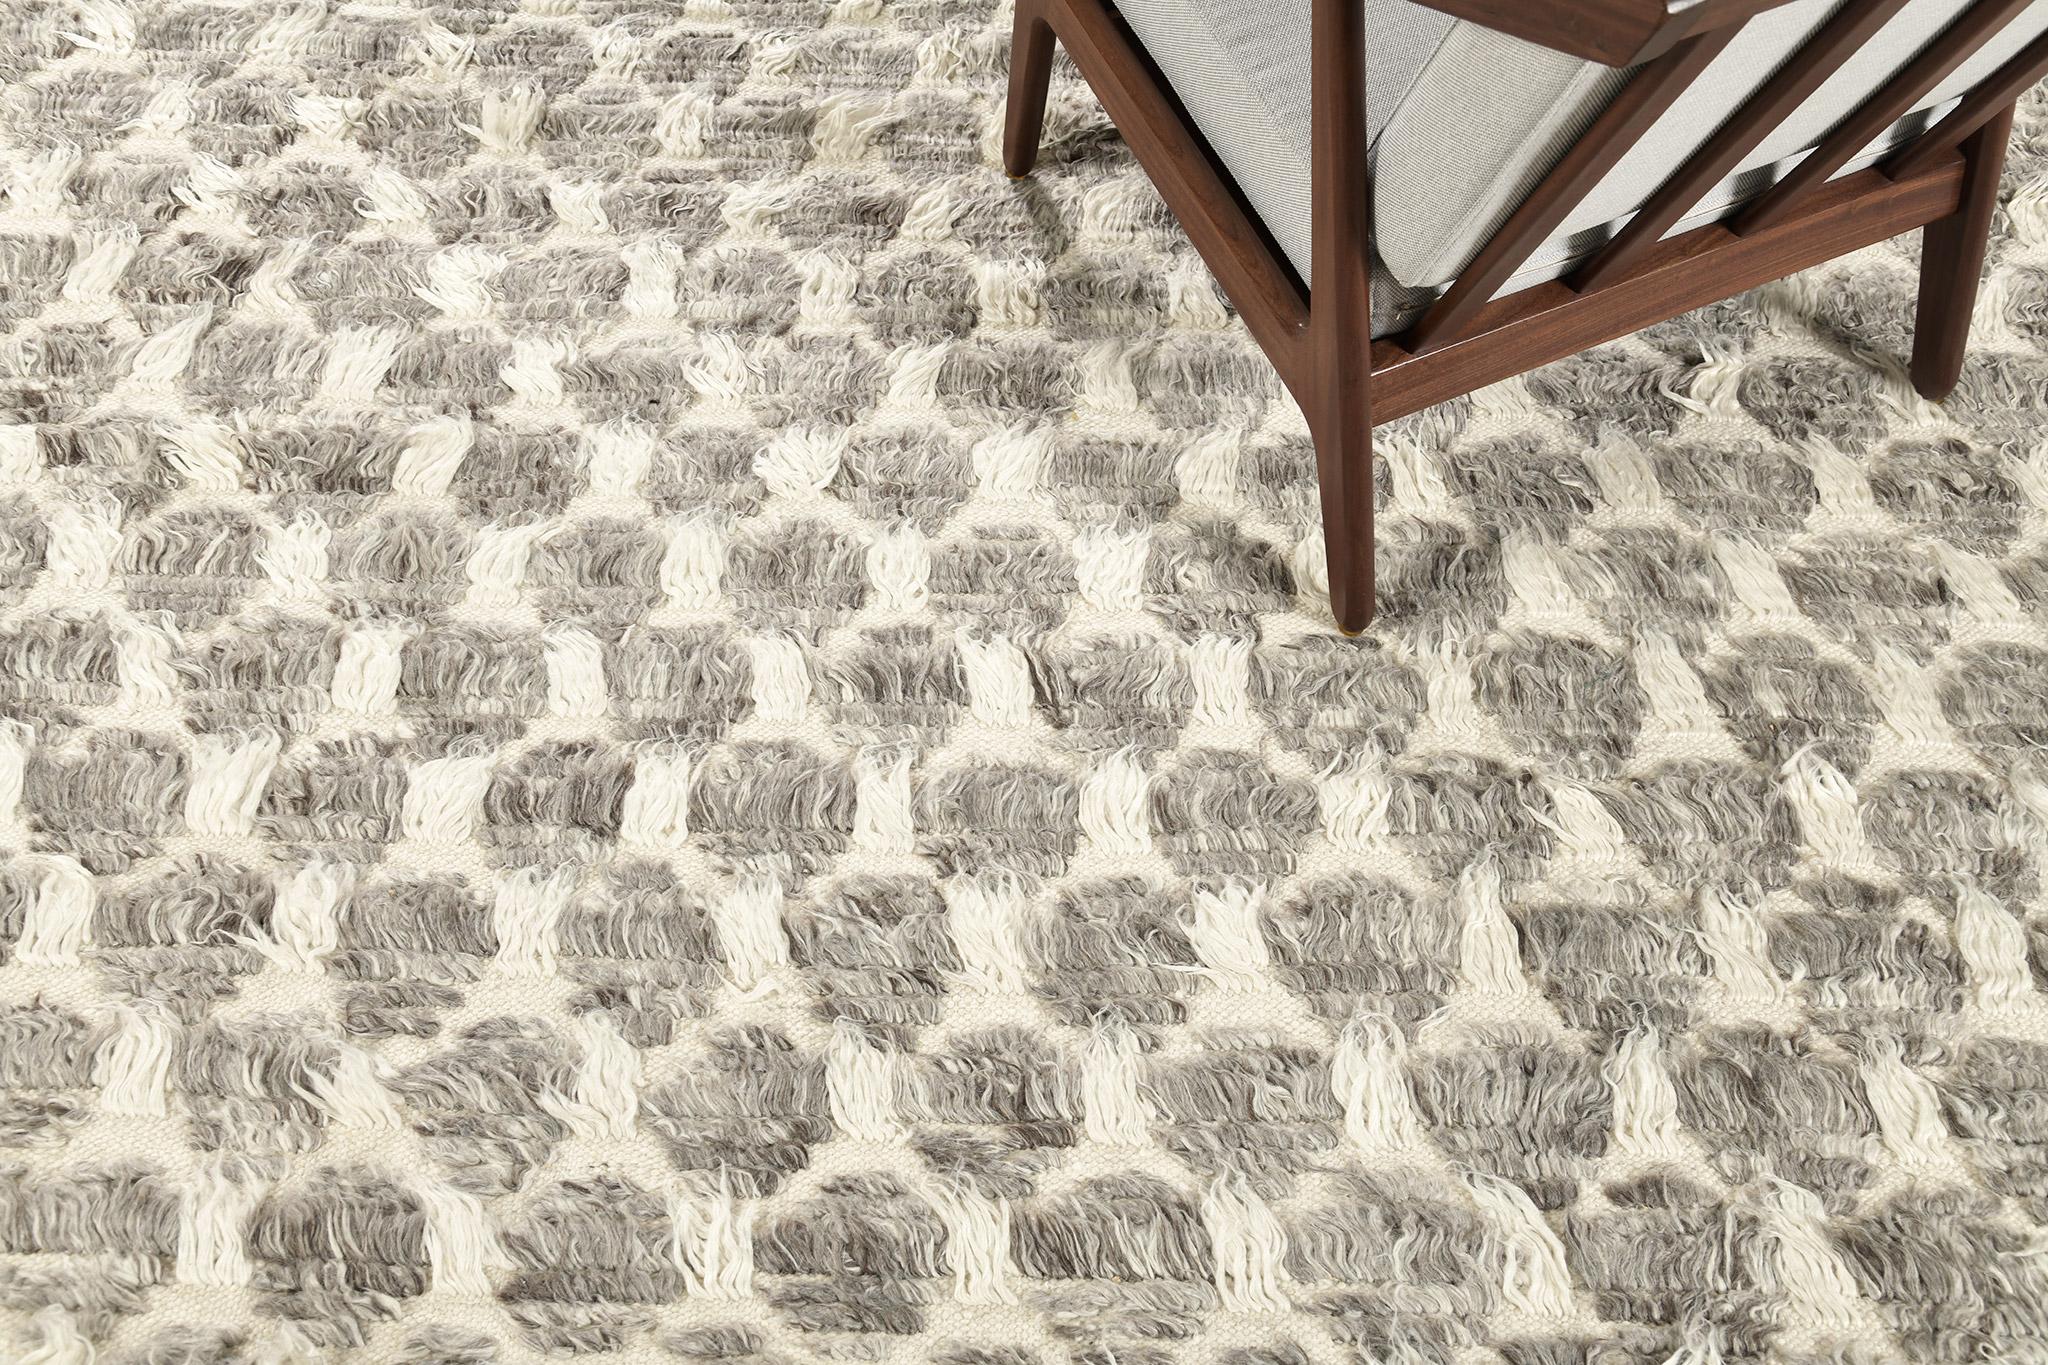 Der Teppich Hanin ist ein komplexes, mehrfarbiges Rastermotiv in langen Florlinien mit Formen von Zierflor und offenen Flachgewebe-Akzenten. Hanin ist mit einer warmen Mischung aus Kakao-, Lehm- und Goldtönen in gemischten Grautönen auf